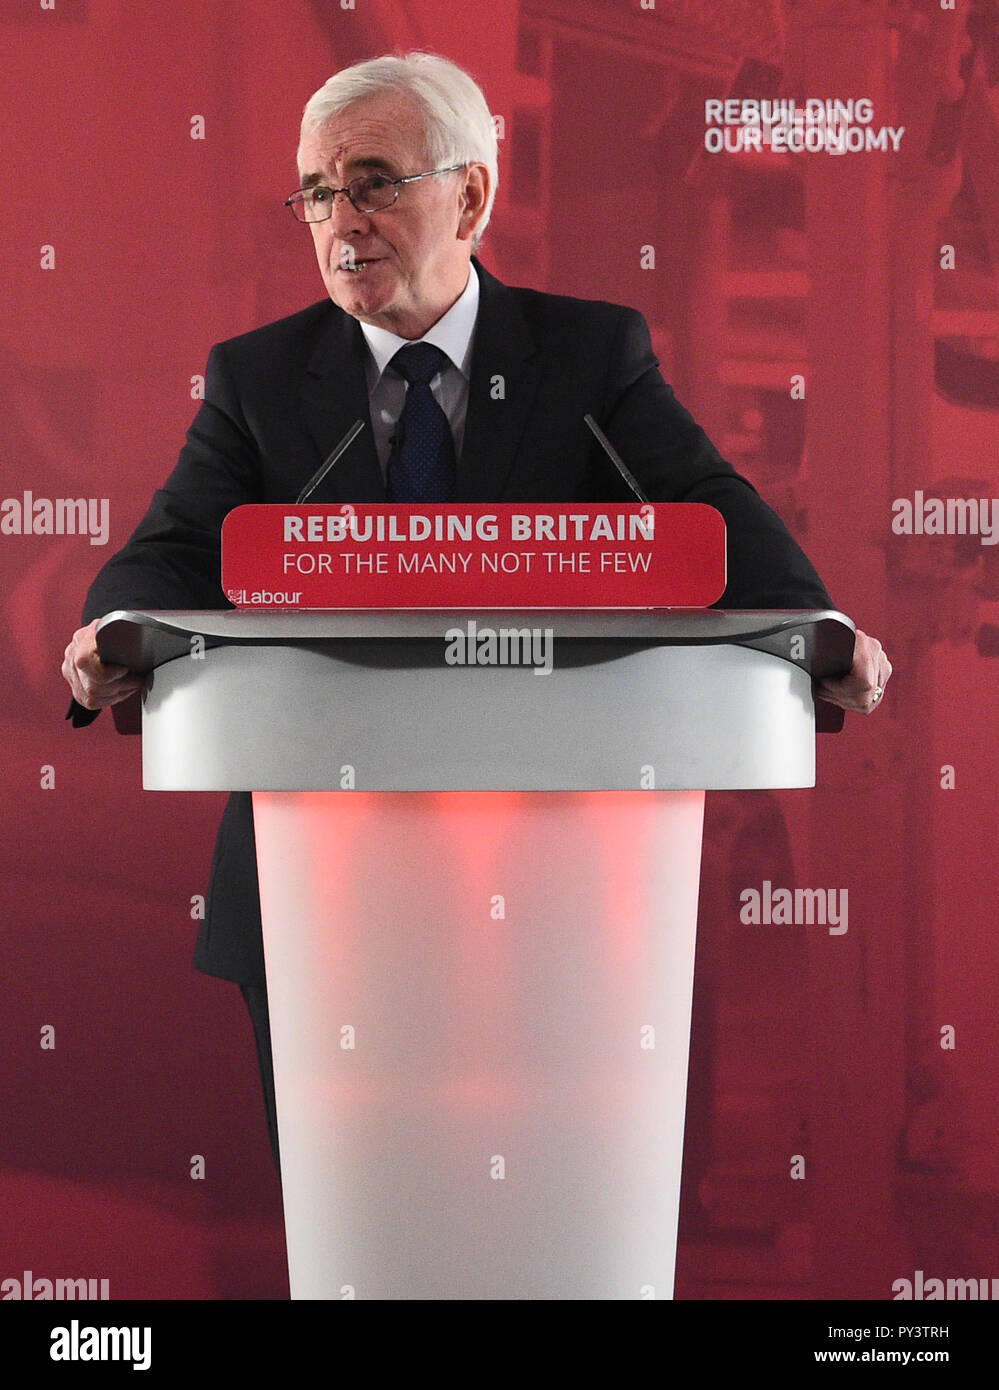 Schattenkanzler John McDonnell hält eine Rede im Savoy Place in London, in der er Bundeskanzler Philip Hammond aufforderte, die "Härte" zuzugeben, die acht Jahre konservativer Sparpolitik den Wählern bei der Bereitstellung seines Budgets am Montag zugefügt haben. Stockfoto